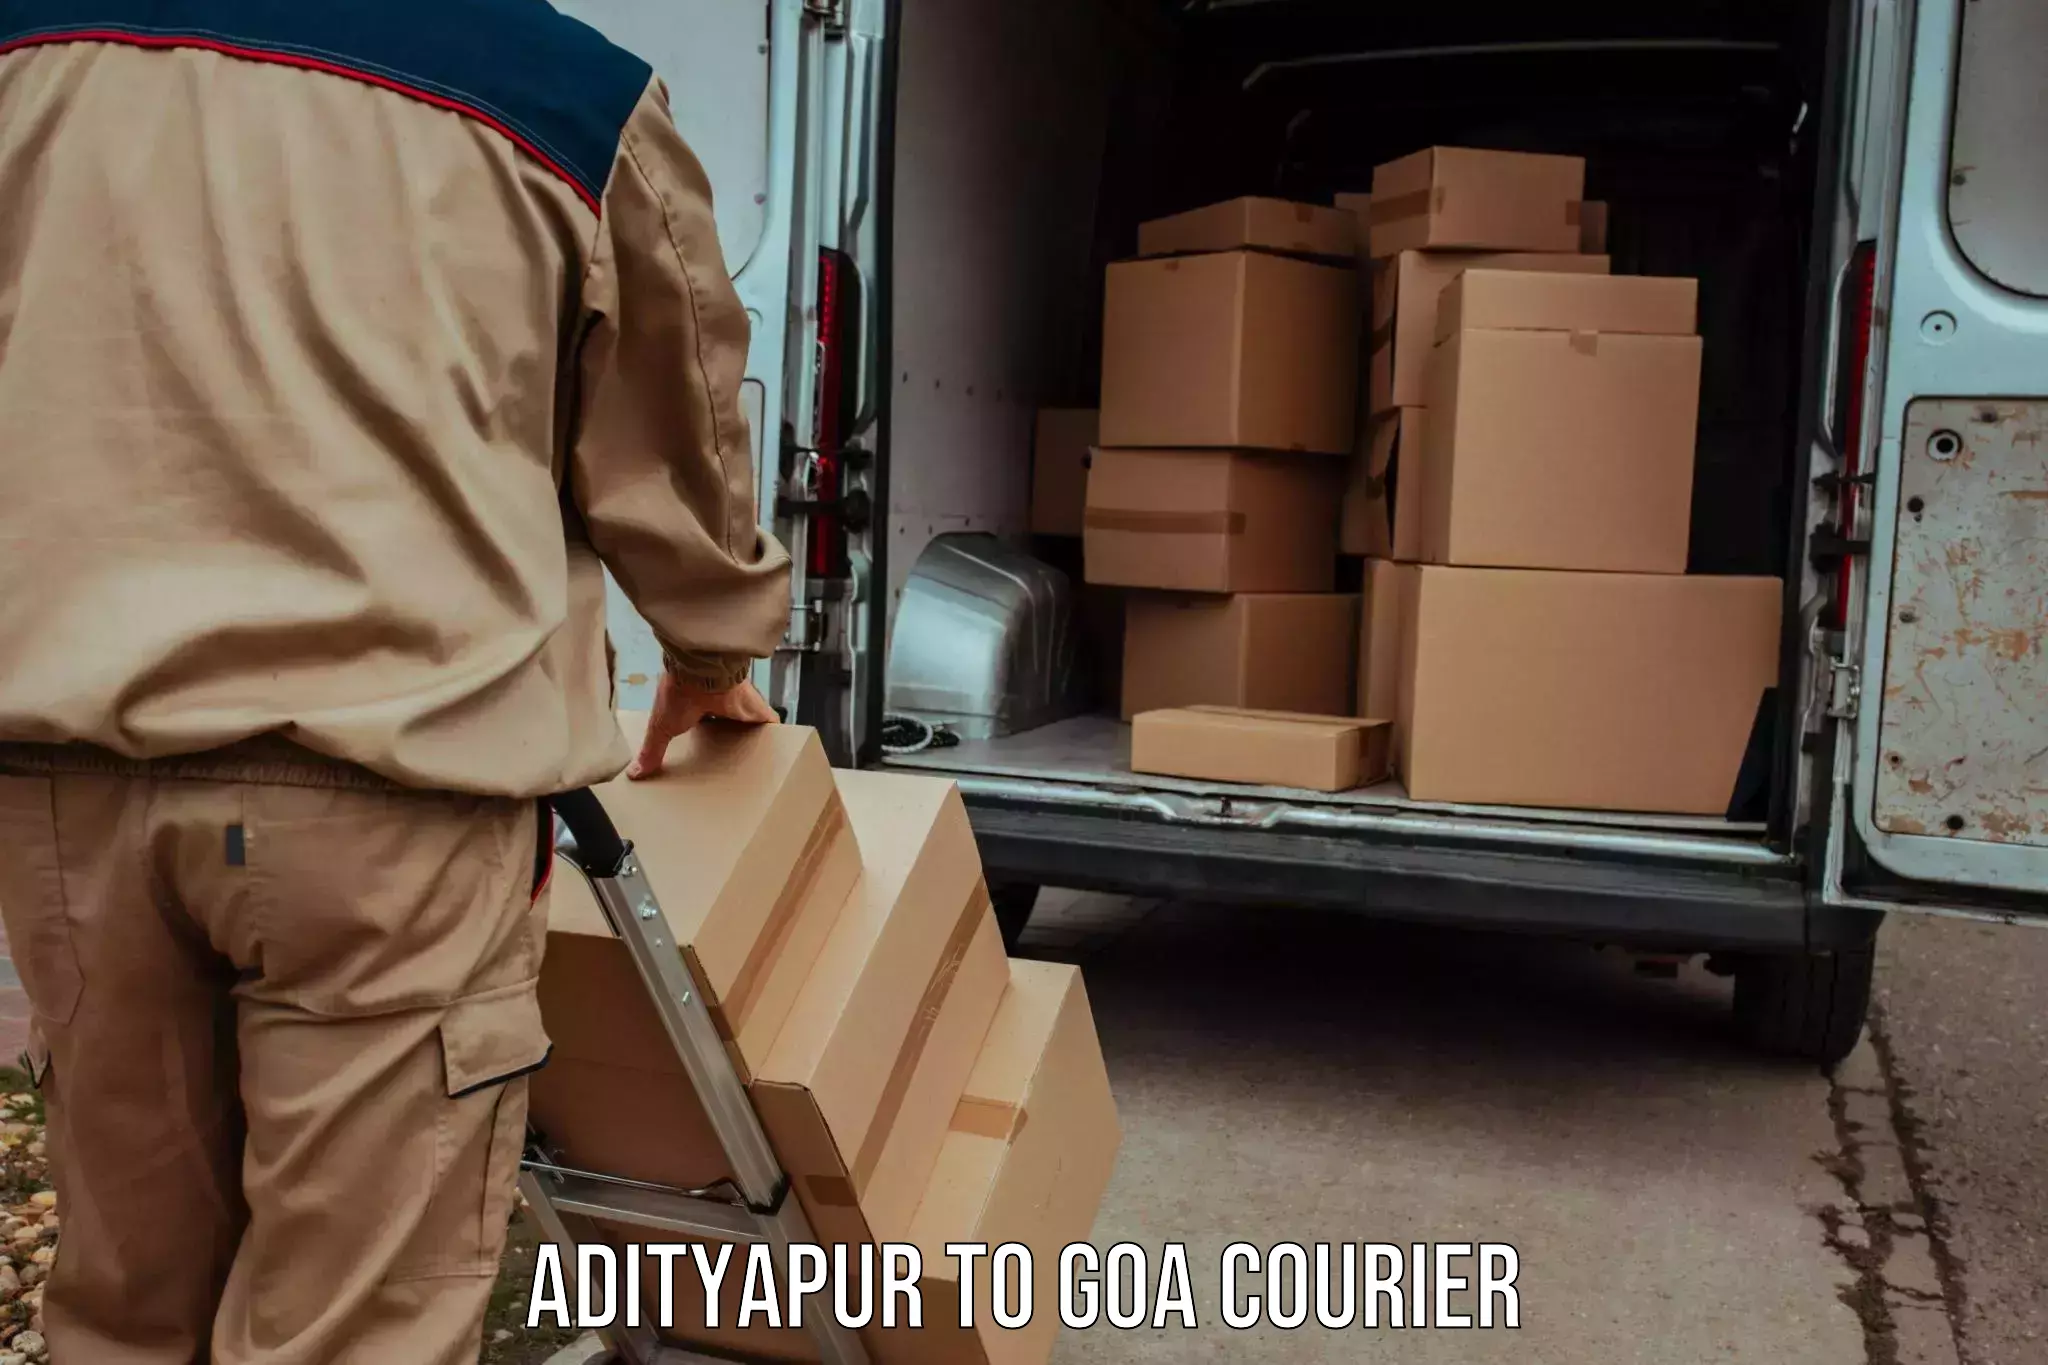 On-demand shipping options Adityapur to Ponda